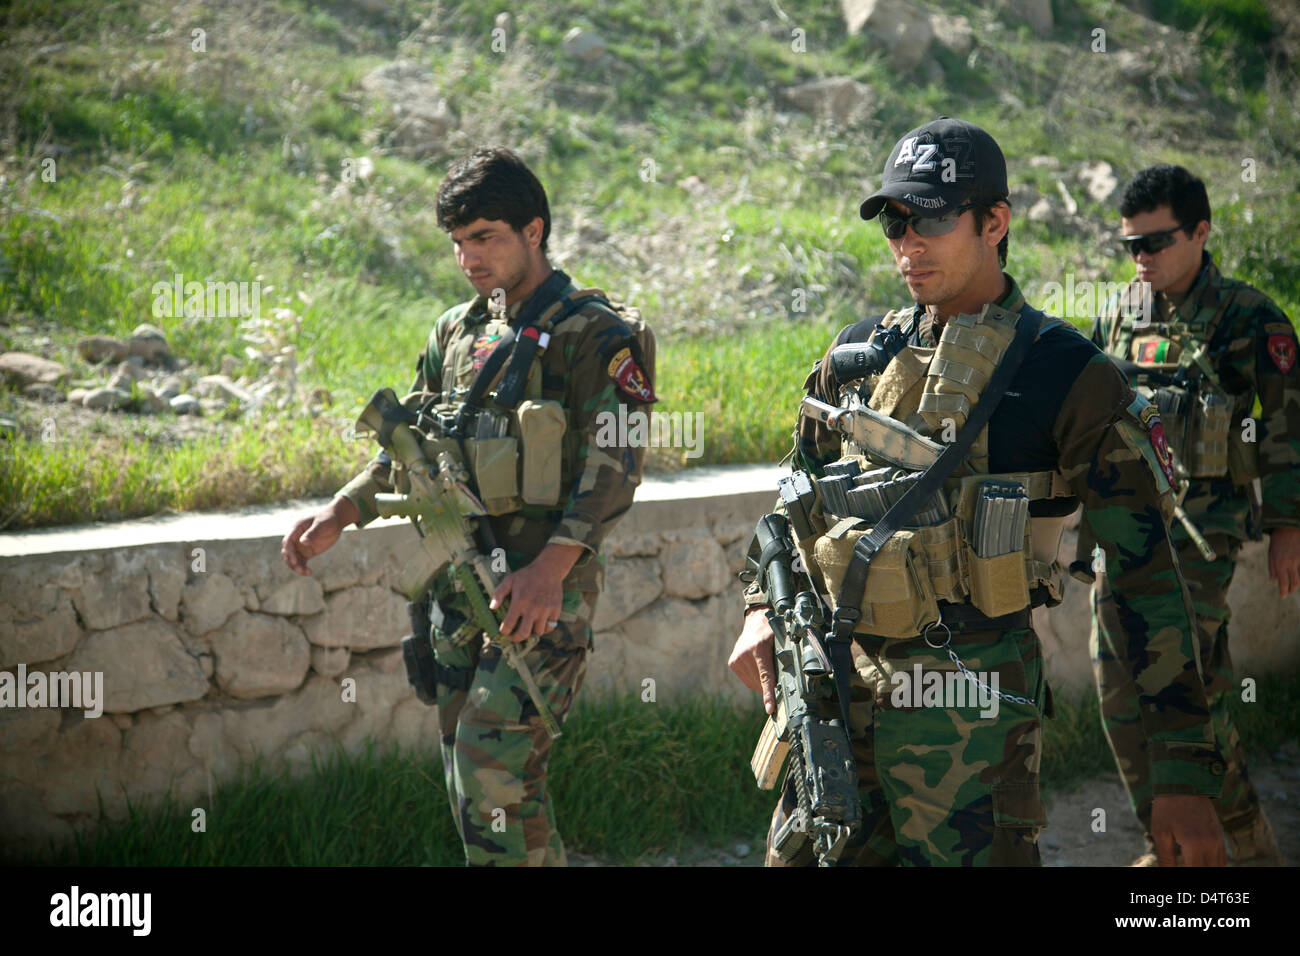 Un esercito nazionale afghano delle forze speciali commandos mantenere la sicurezza durante un afghano di polizia locale la convalida di assunzione Marzo 16, 2013 nella provincia di Helmand, Afghanistan. Foto Stock